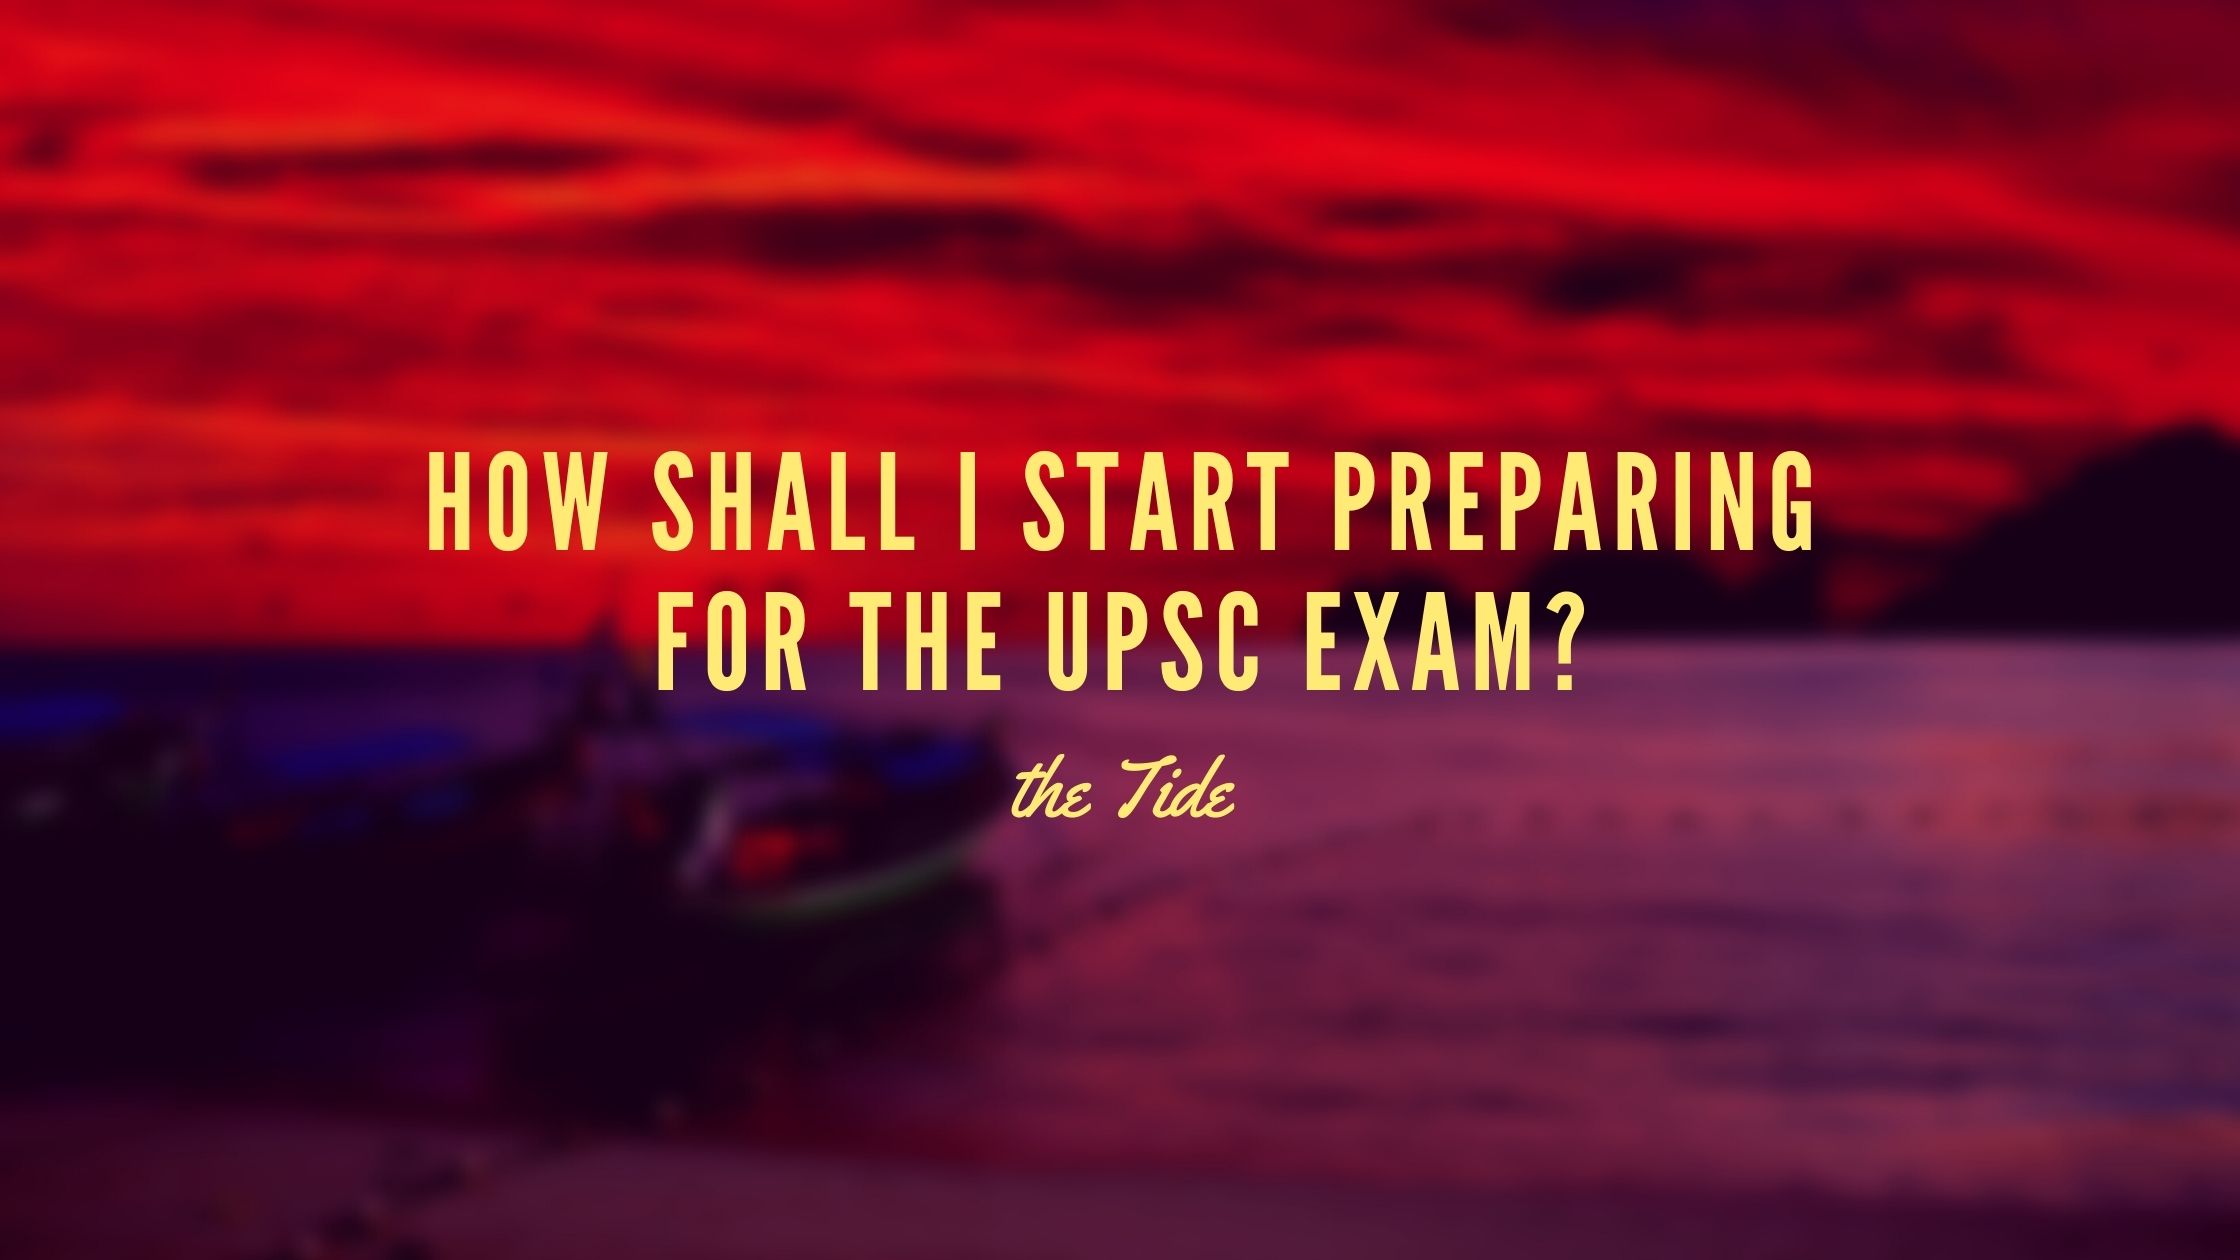 How shall I start preparing for the UPSC exam?